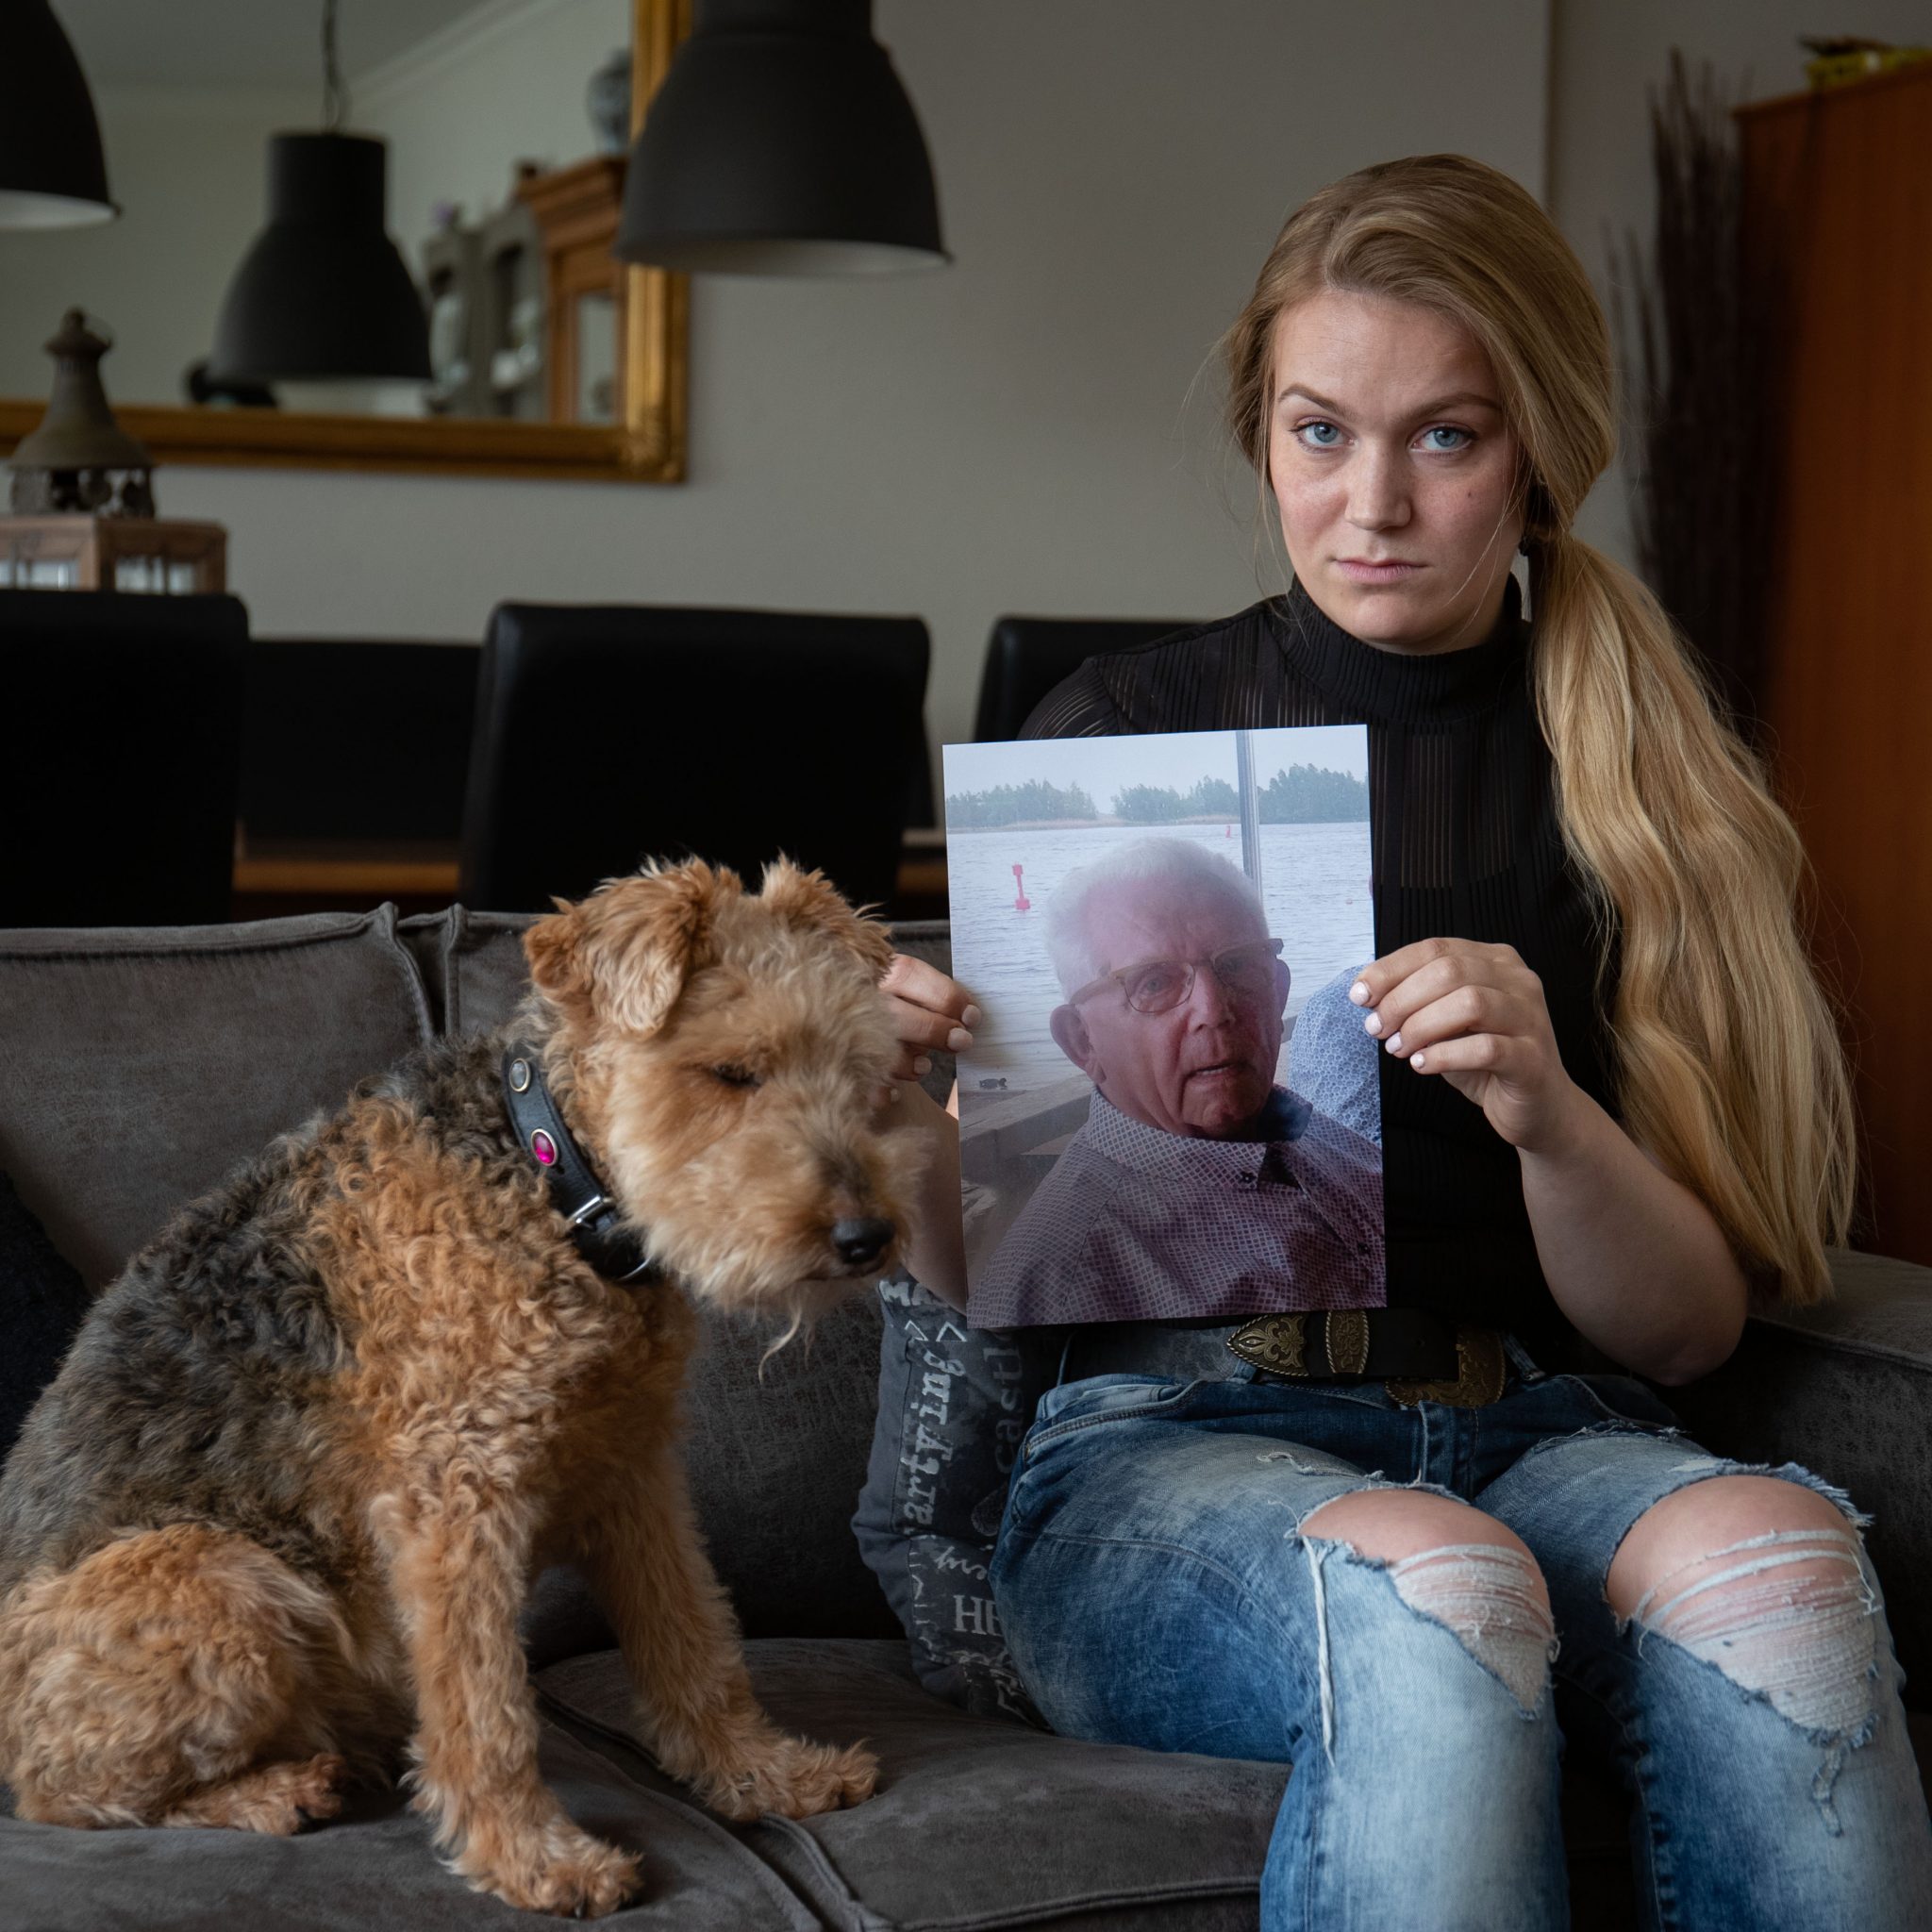 De kleindochter van Dirk van den Belt. De man raakte 8 april 2018 vermist. (Foto Freddy Schinkel)